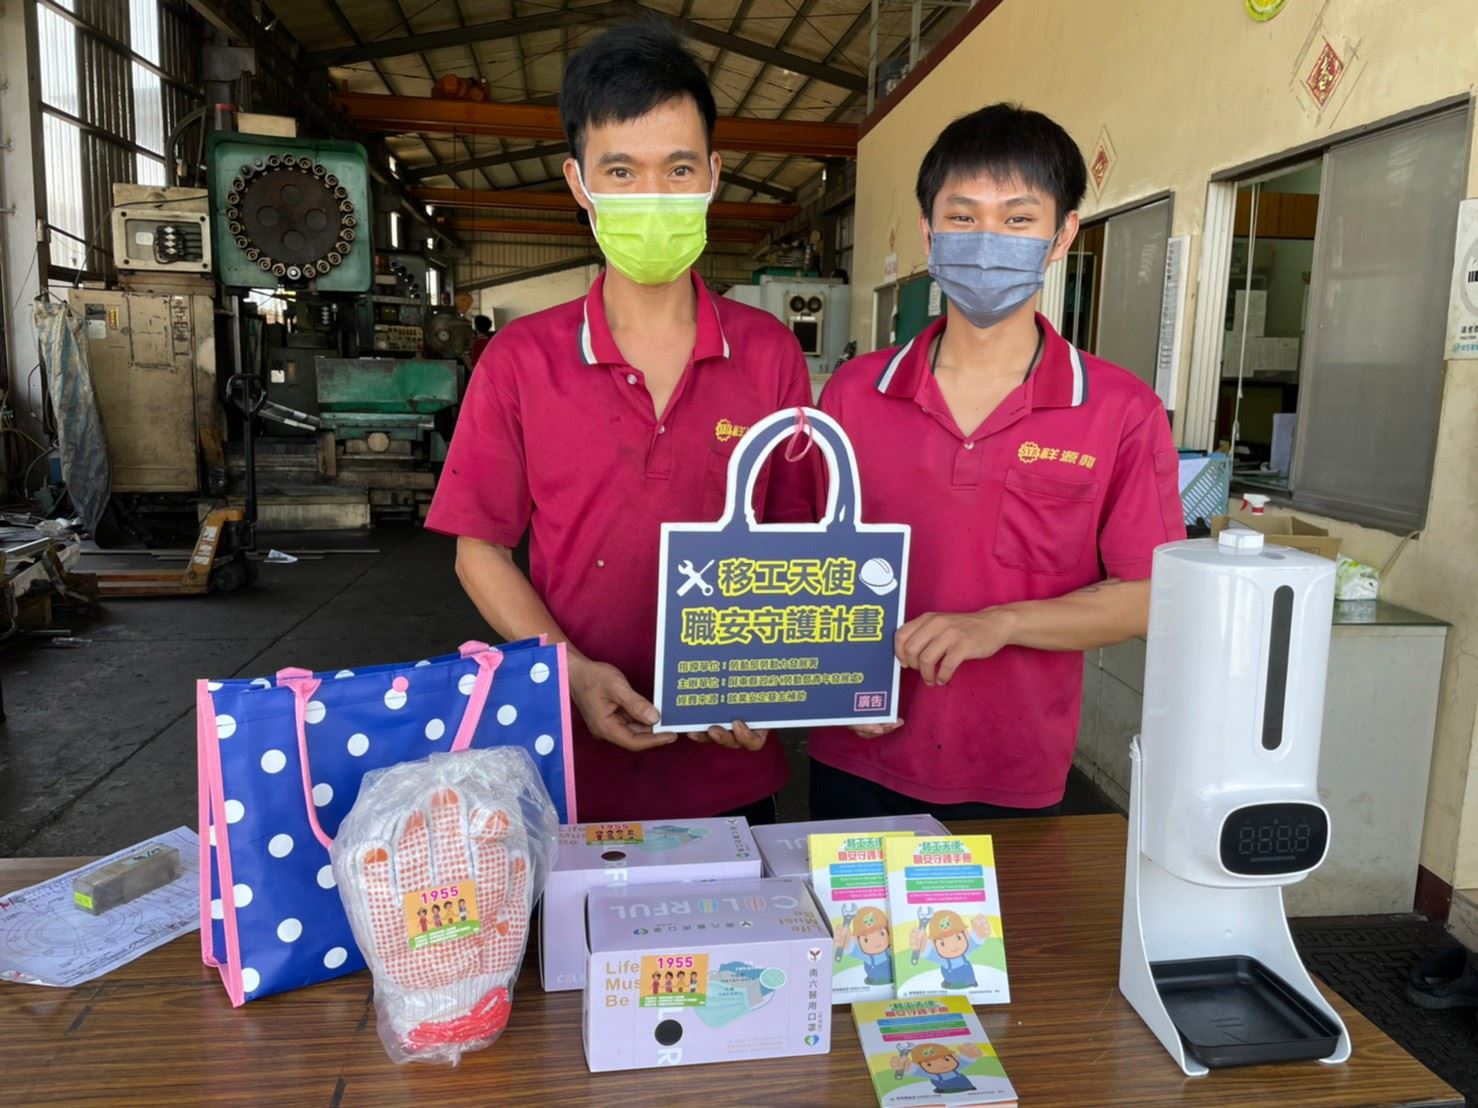 Pekerja migran menerima "Buku Pegangan Keselamatan Kerja" memuji kepedulian pemerintah daerah.  Sumber: Diambil dari pemerintah Pingtung